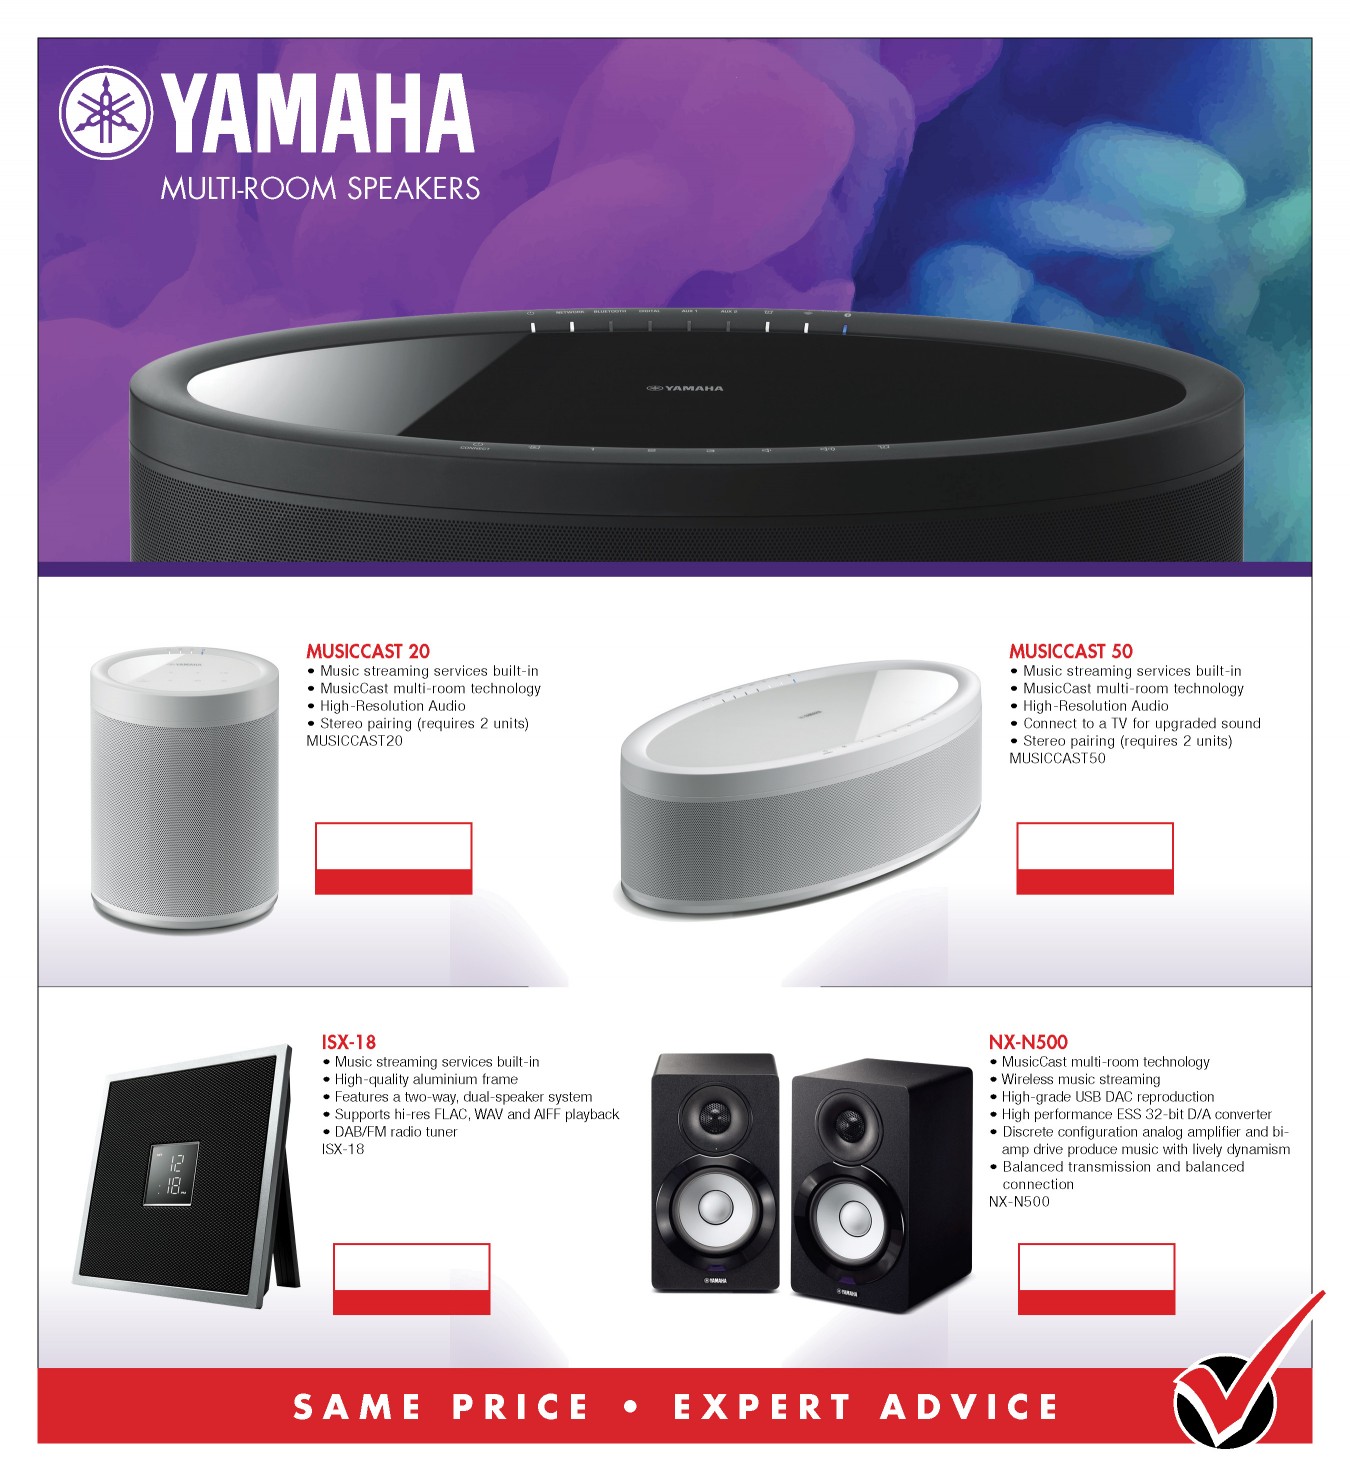 Yamaha Multiroom Speakers